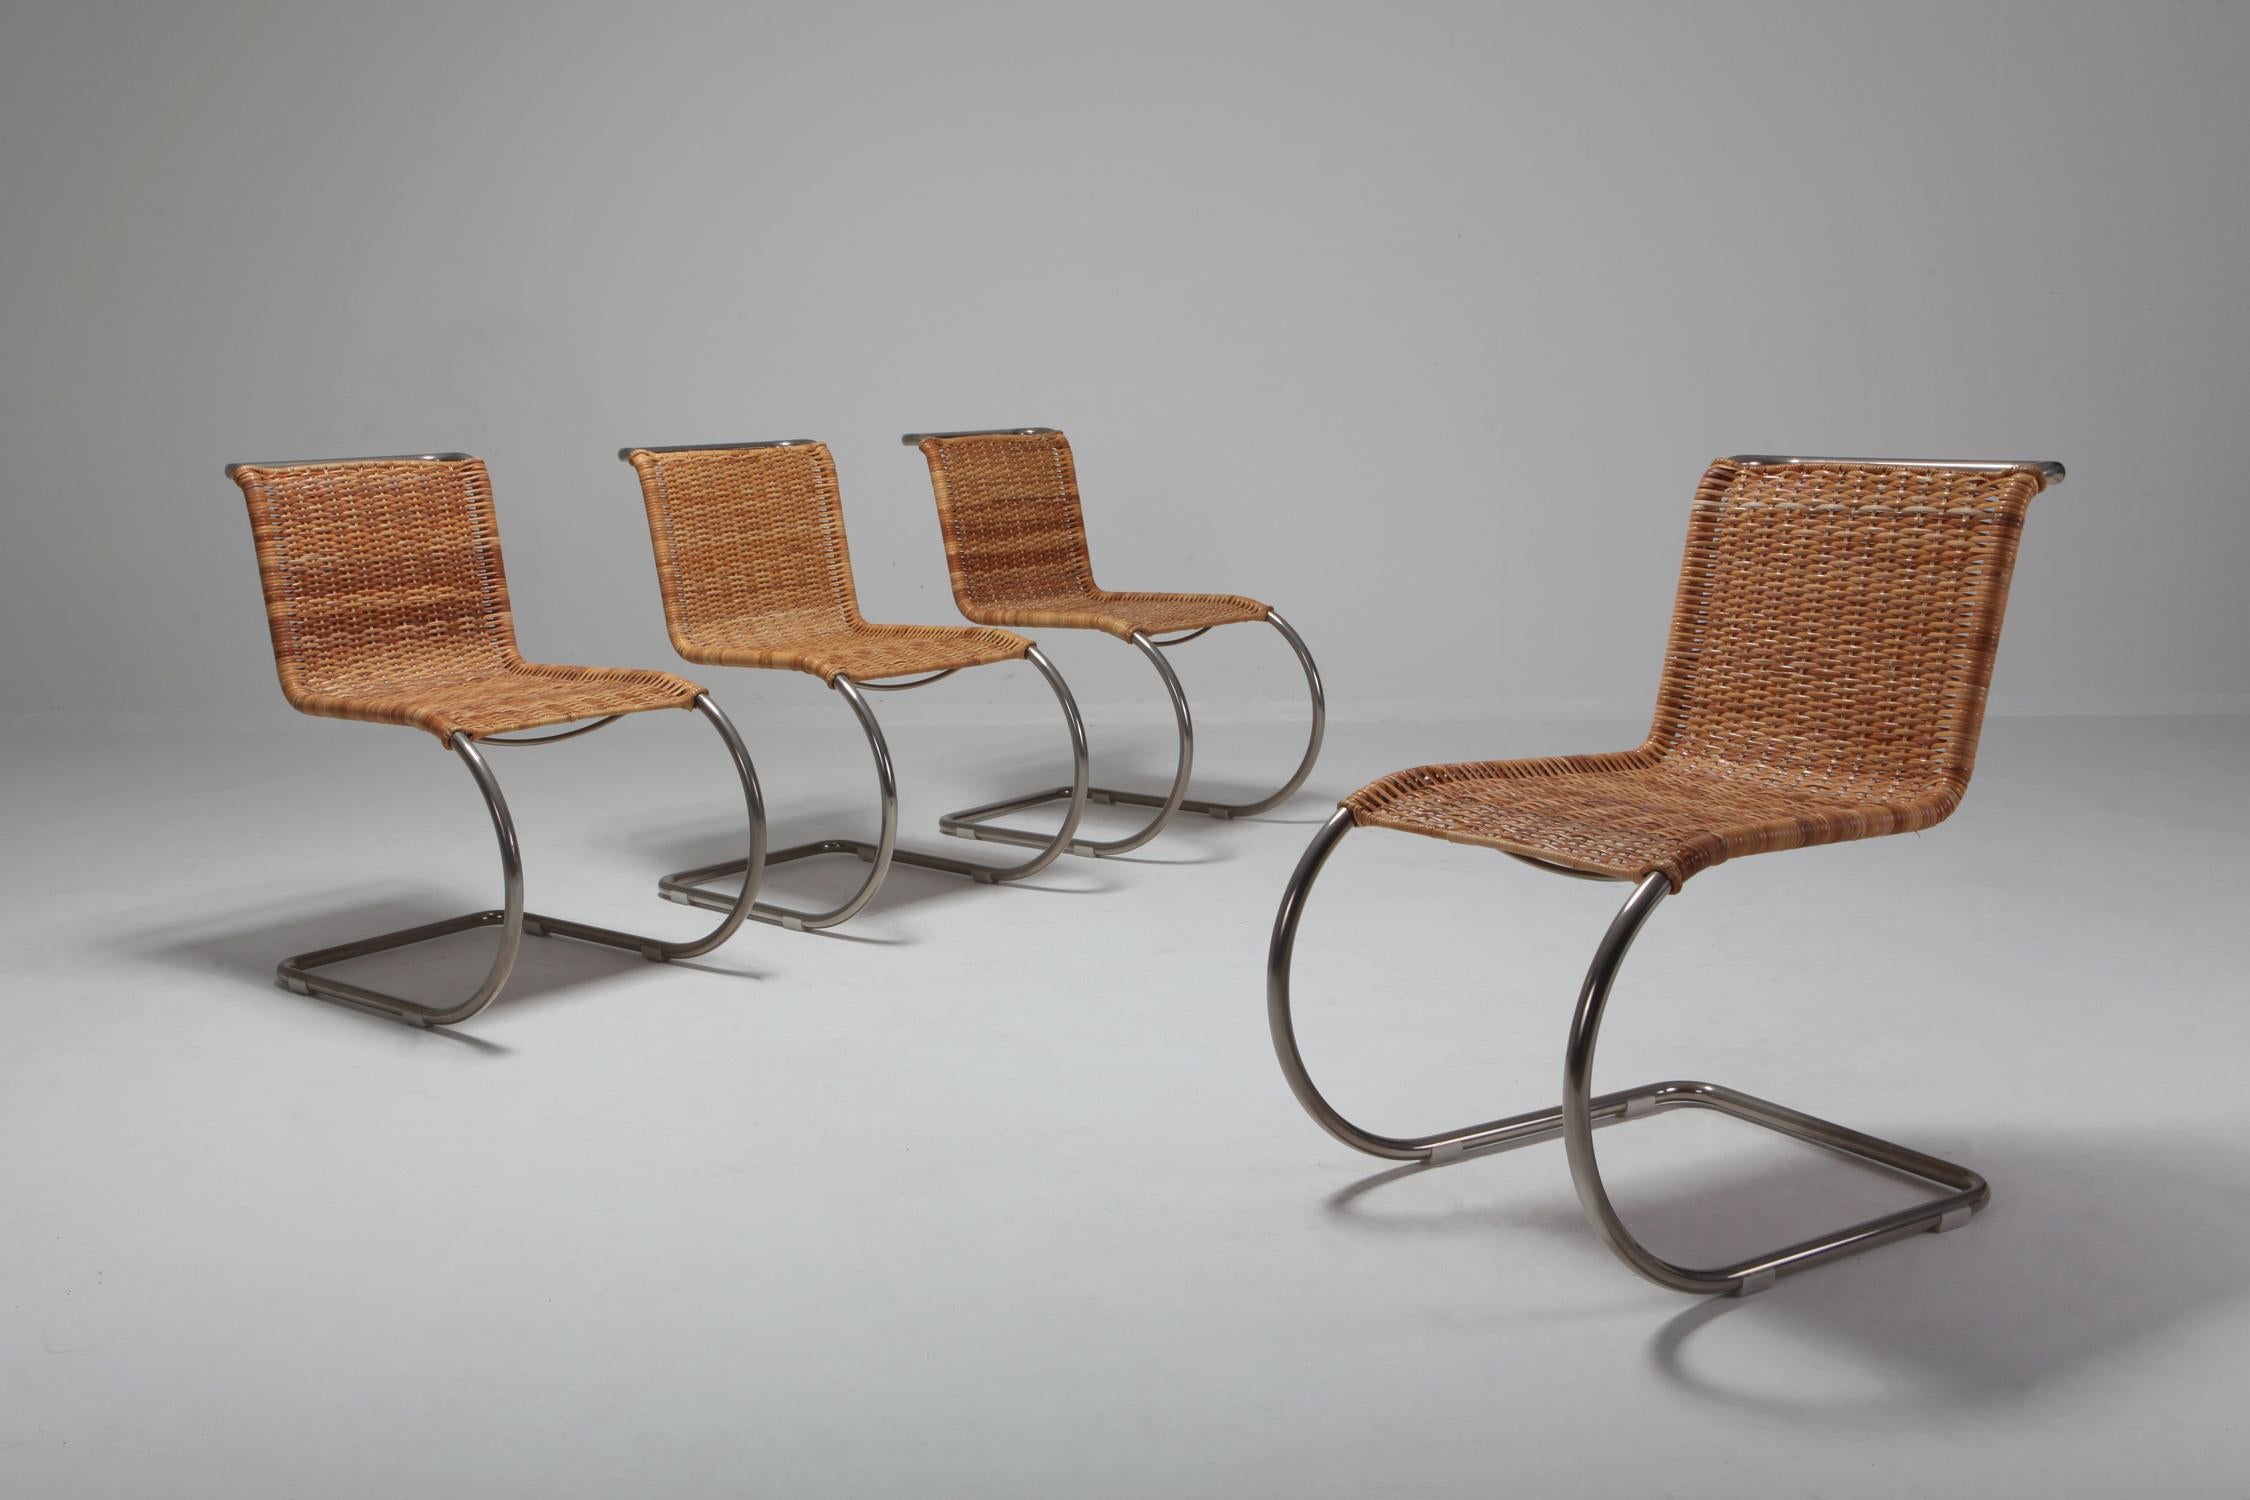 20th Century Bauhaus B42 Chair by Mies van der Rohe for Tecta